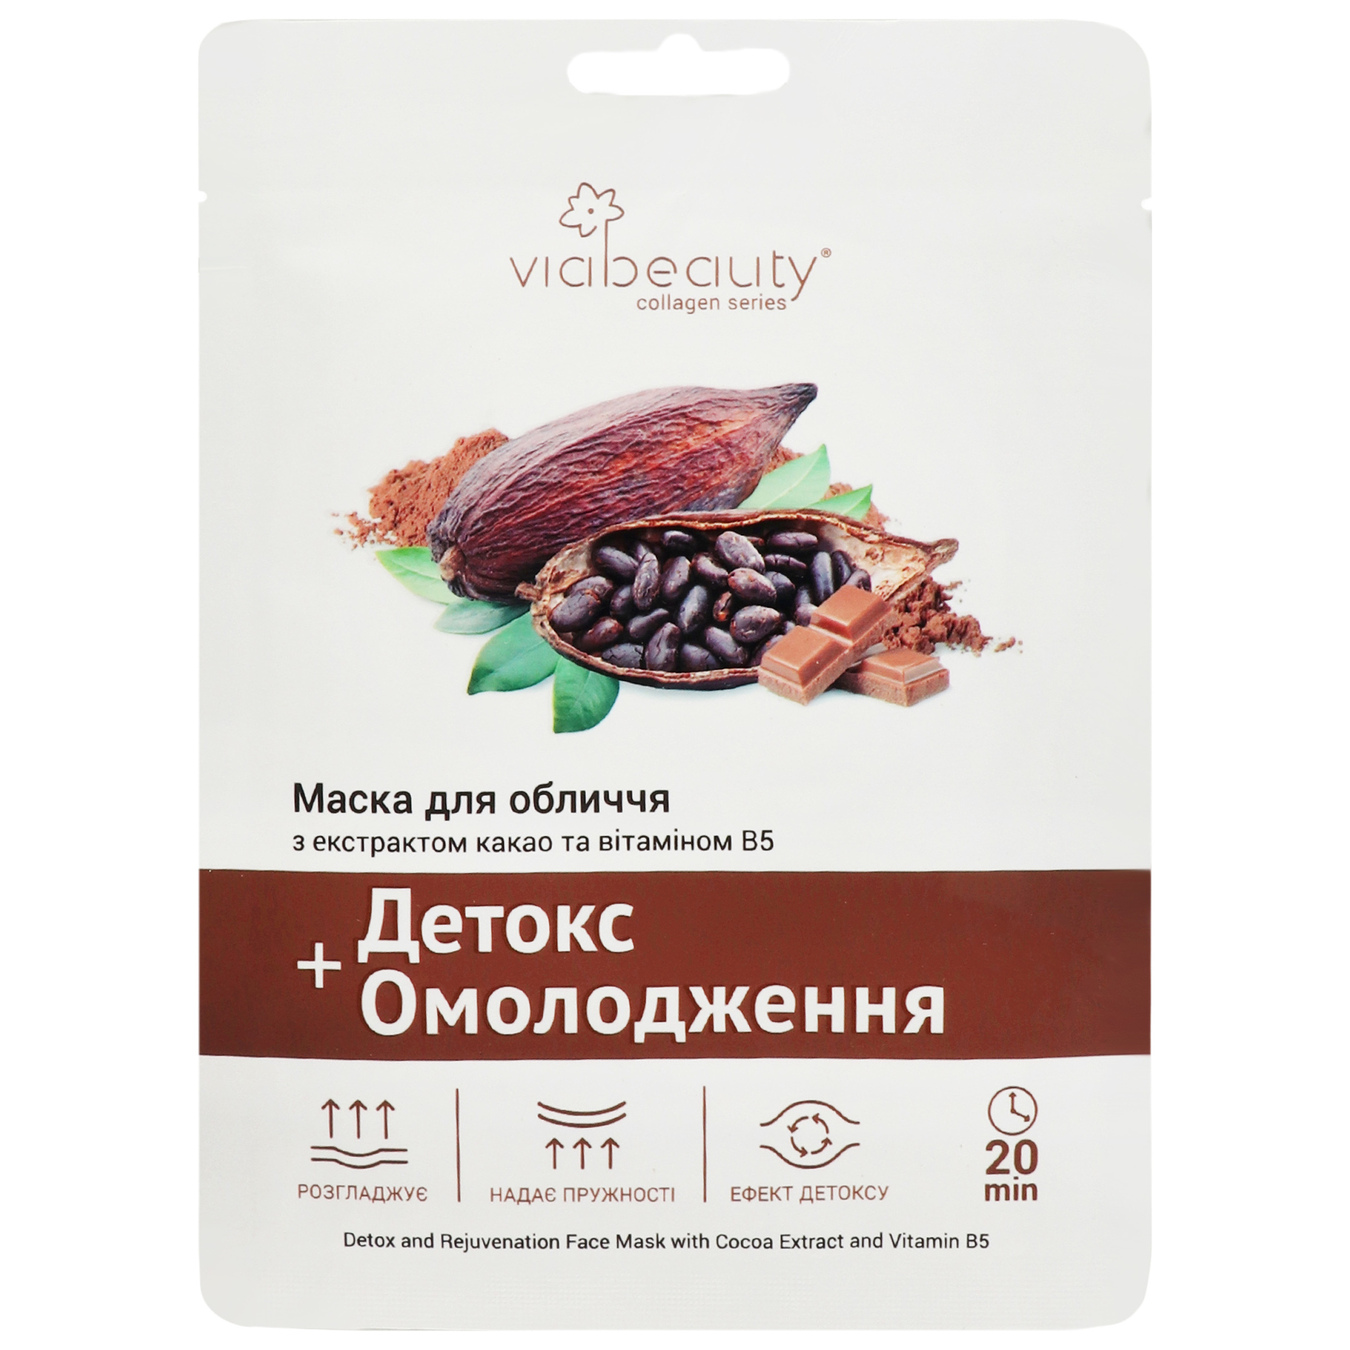 Маска ViaBeauty для обличчя тканинна з екстрактом какао та вітаміном В5 детокс таомолодження